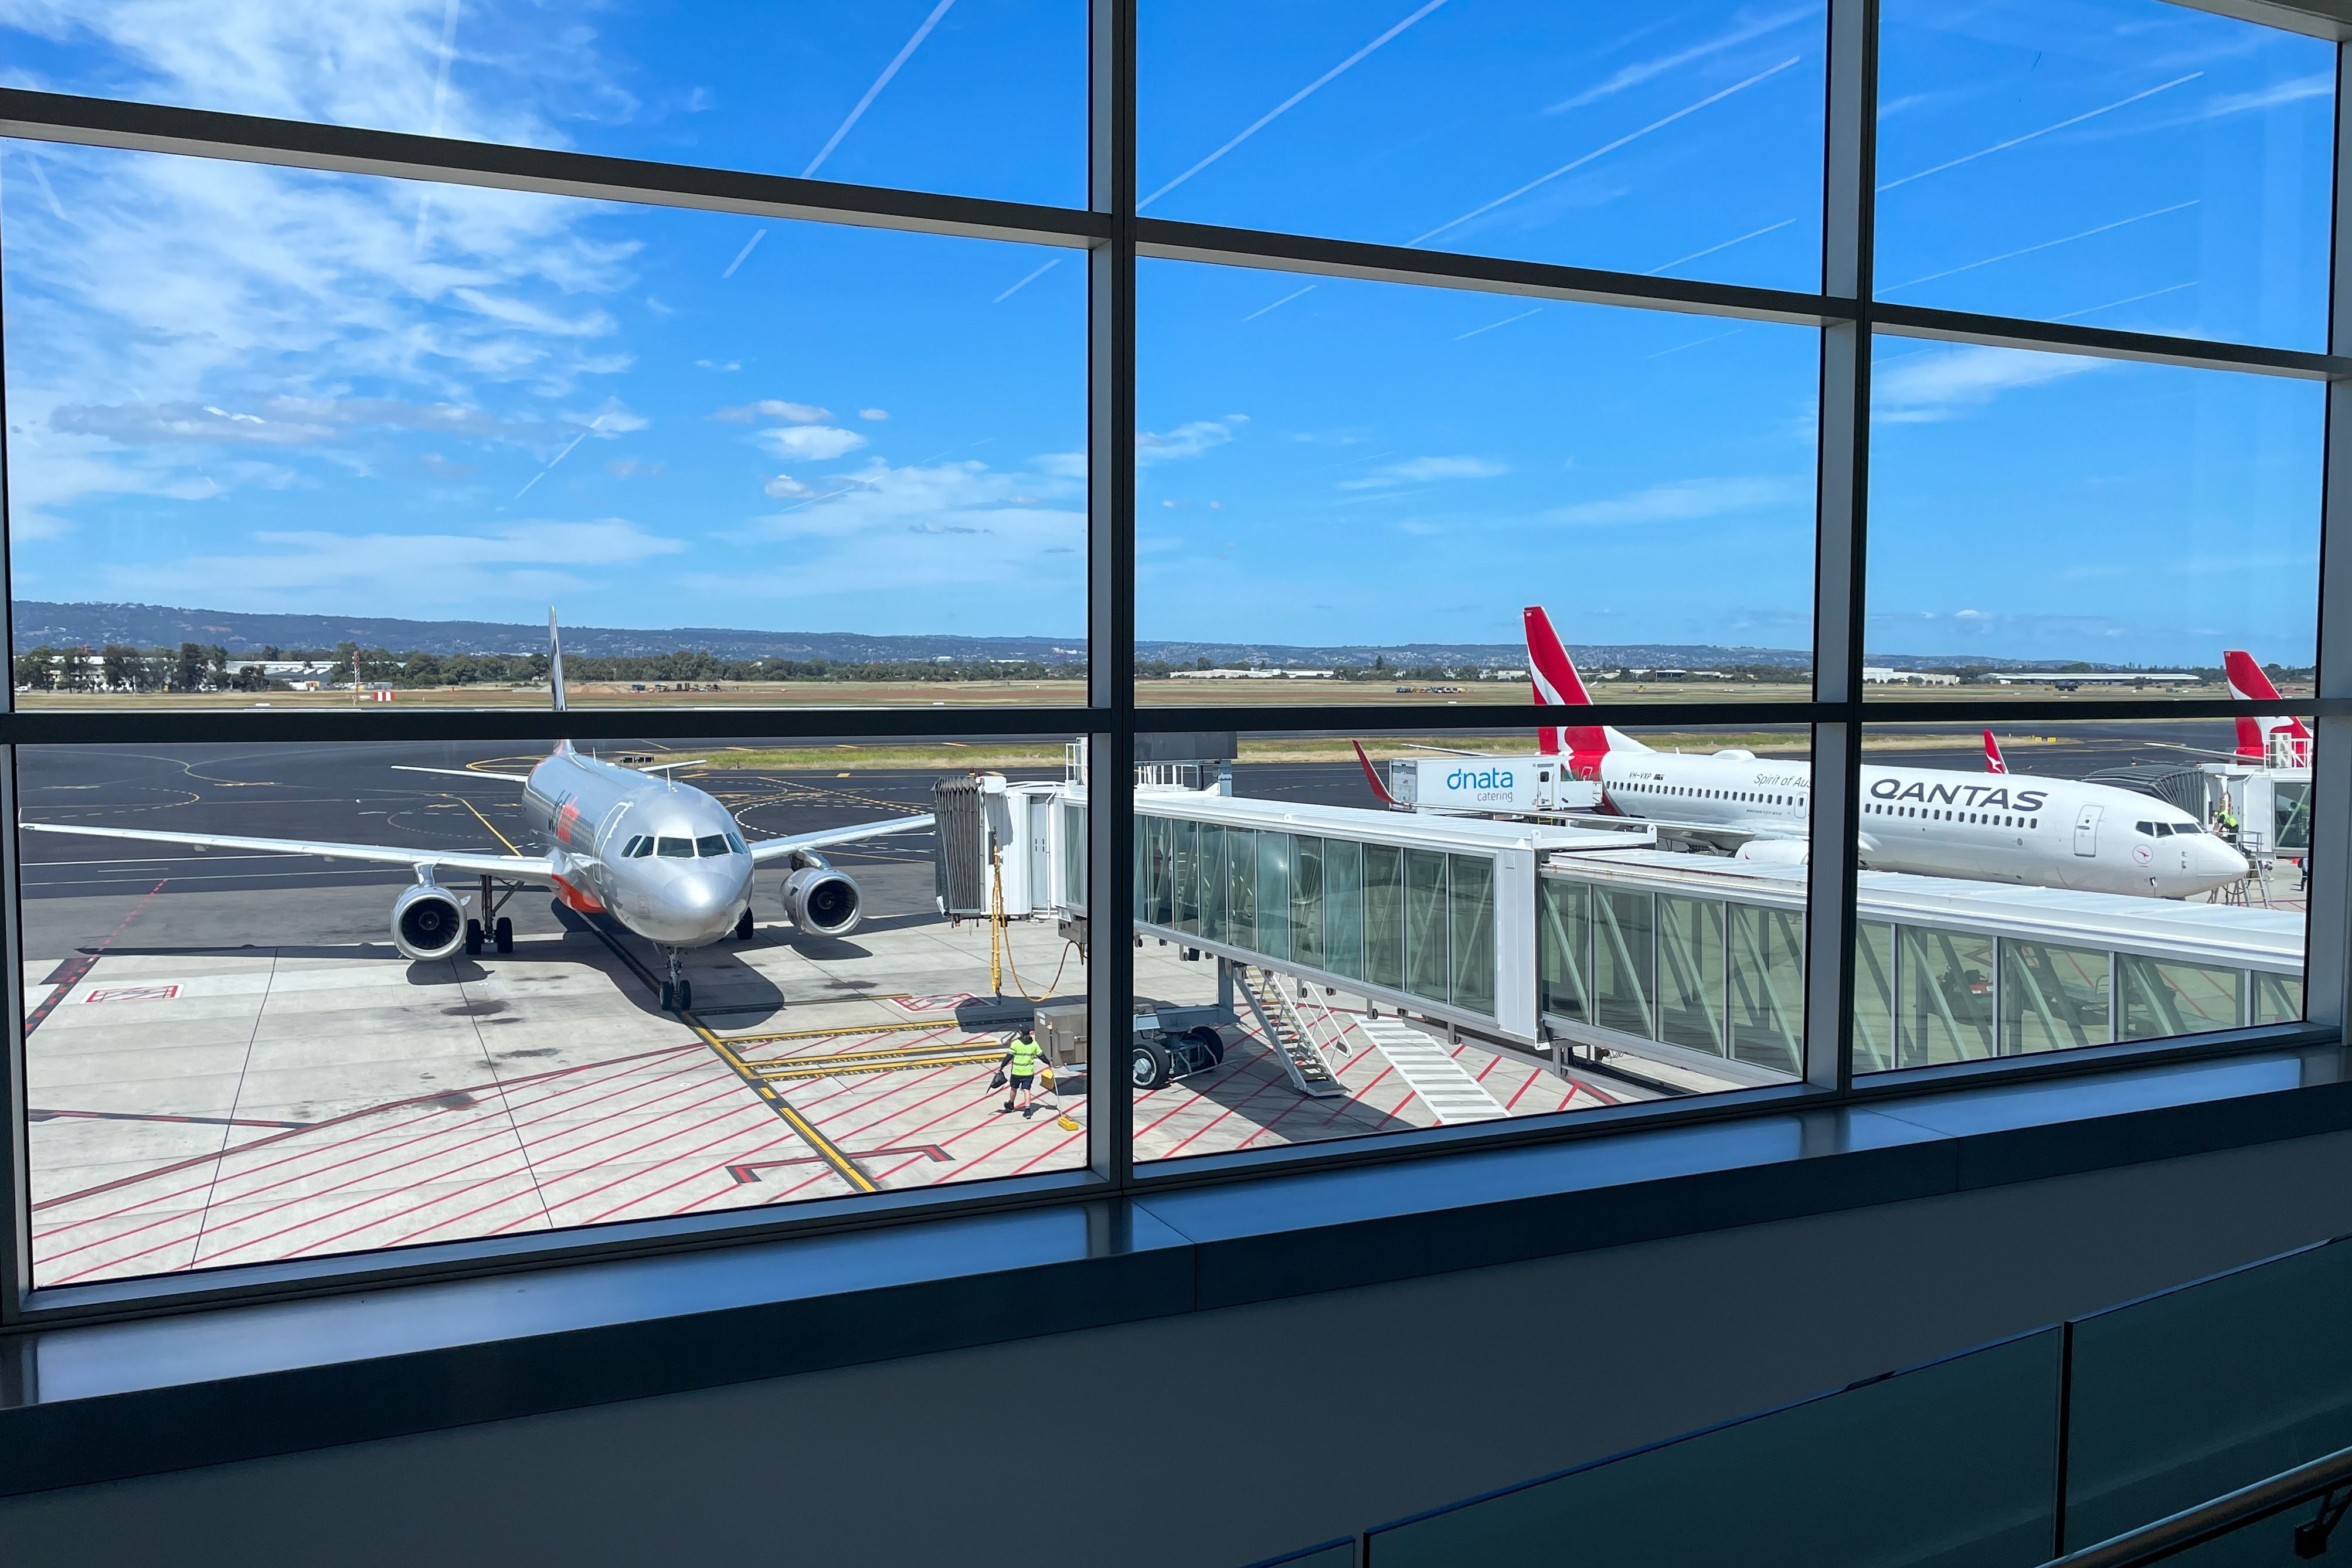 etstar and Qantas aircrafts parked at Adelaide Airport.